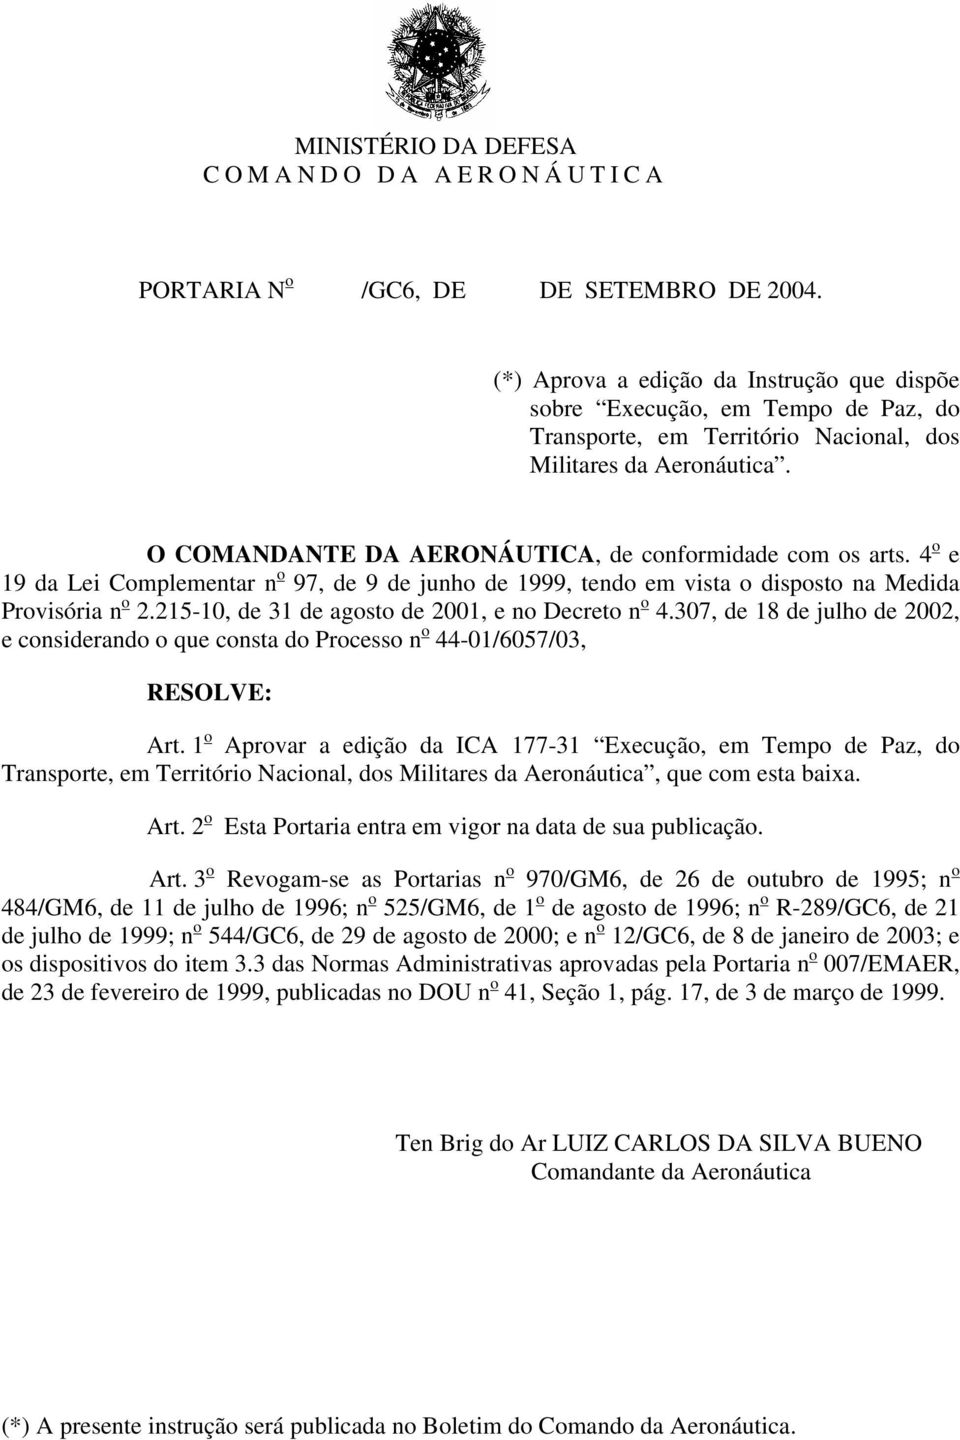 O COMANDANTE DA AERONÁUTICA, de conformidade com os arts. 4 o e 19 da Lei Complementar n o 97, de 9 de junho de 1999, tendo em vista o disposto na Medida Provisória n o 2.